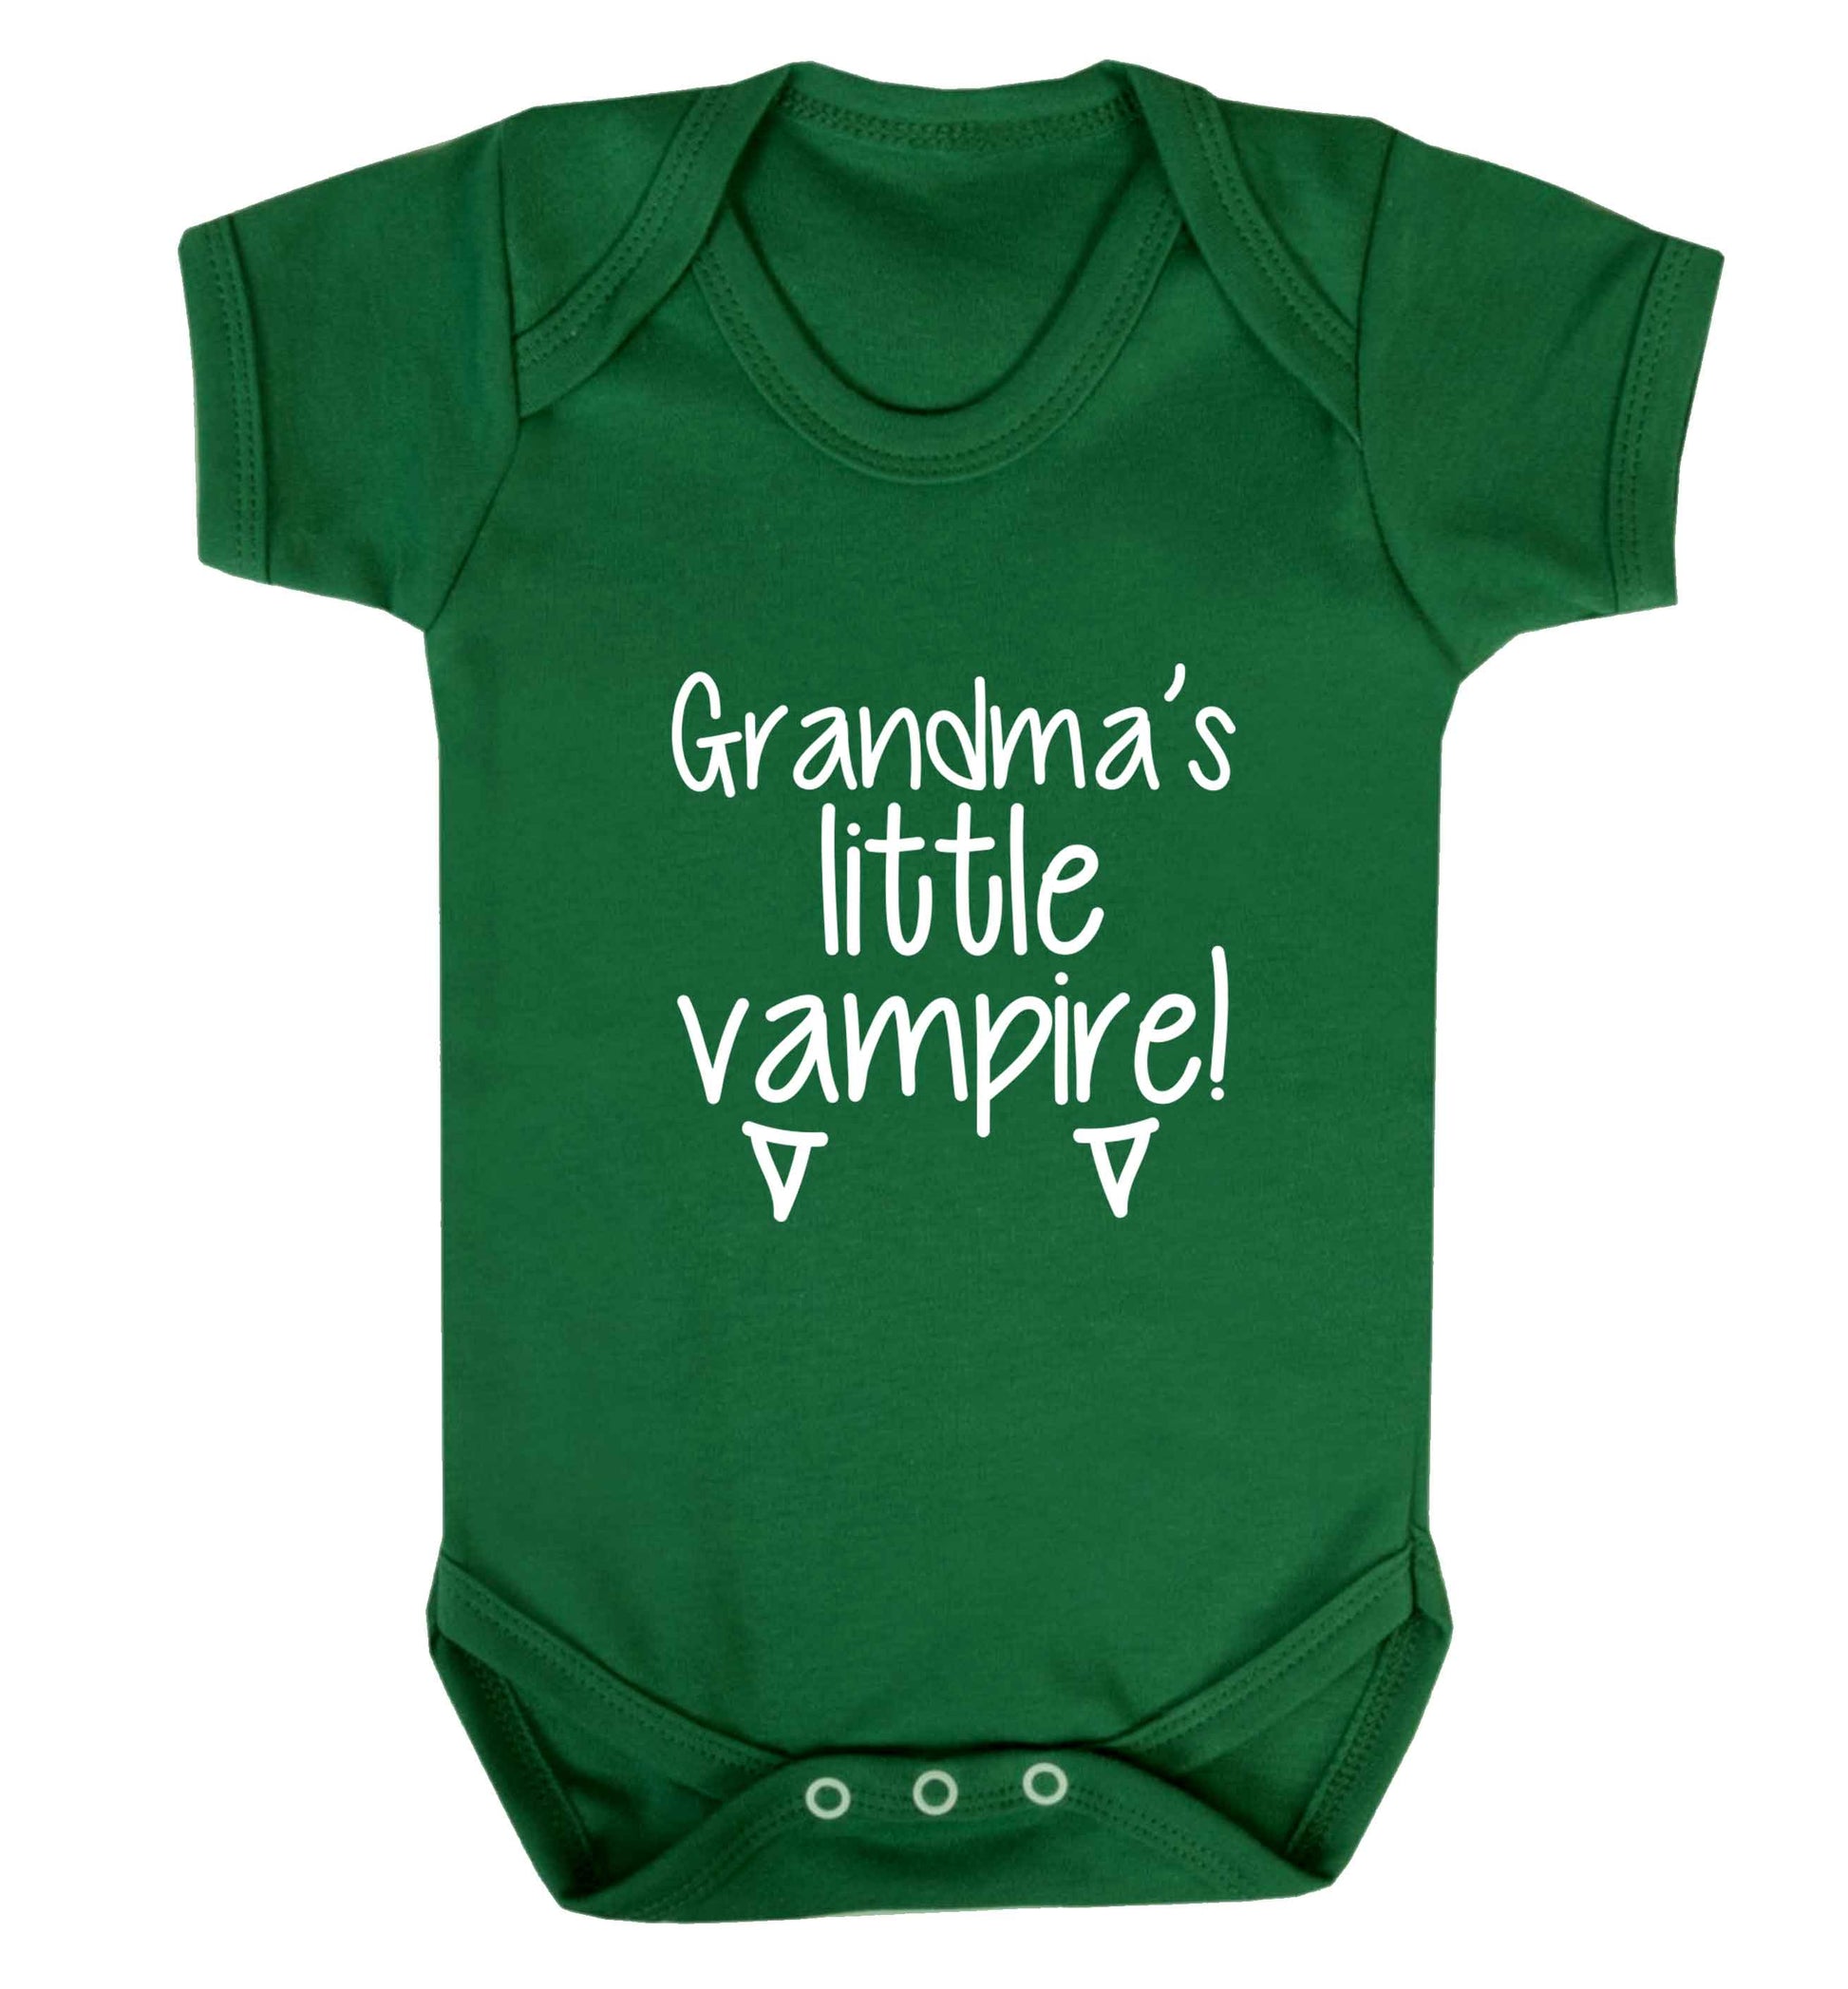 Grandma's little vampire baby vest green 18-24 months